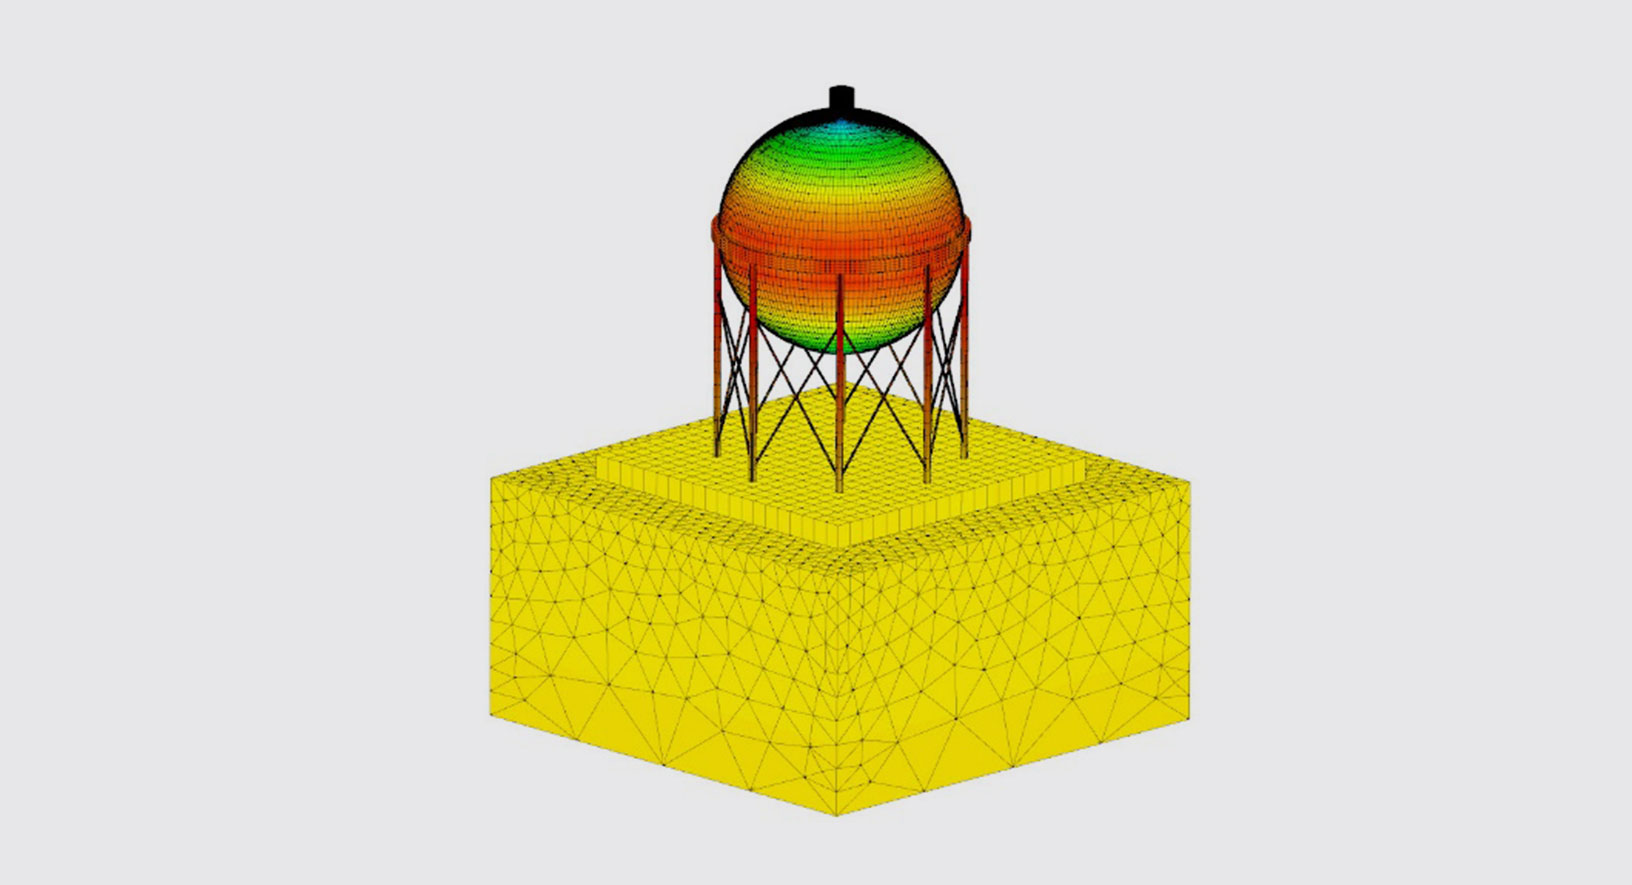 Simulación multifísica para el análisis estructural de refinerías utilizando CivilFEM, con la tecnología de Marc